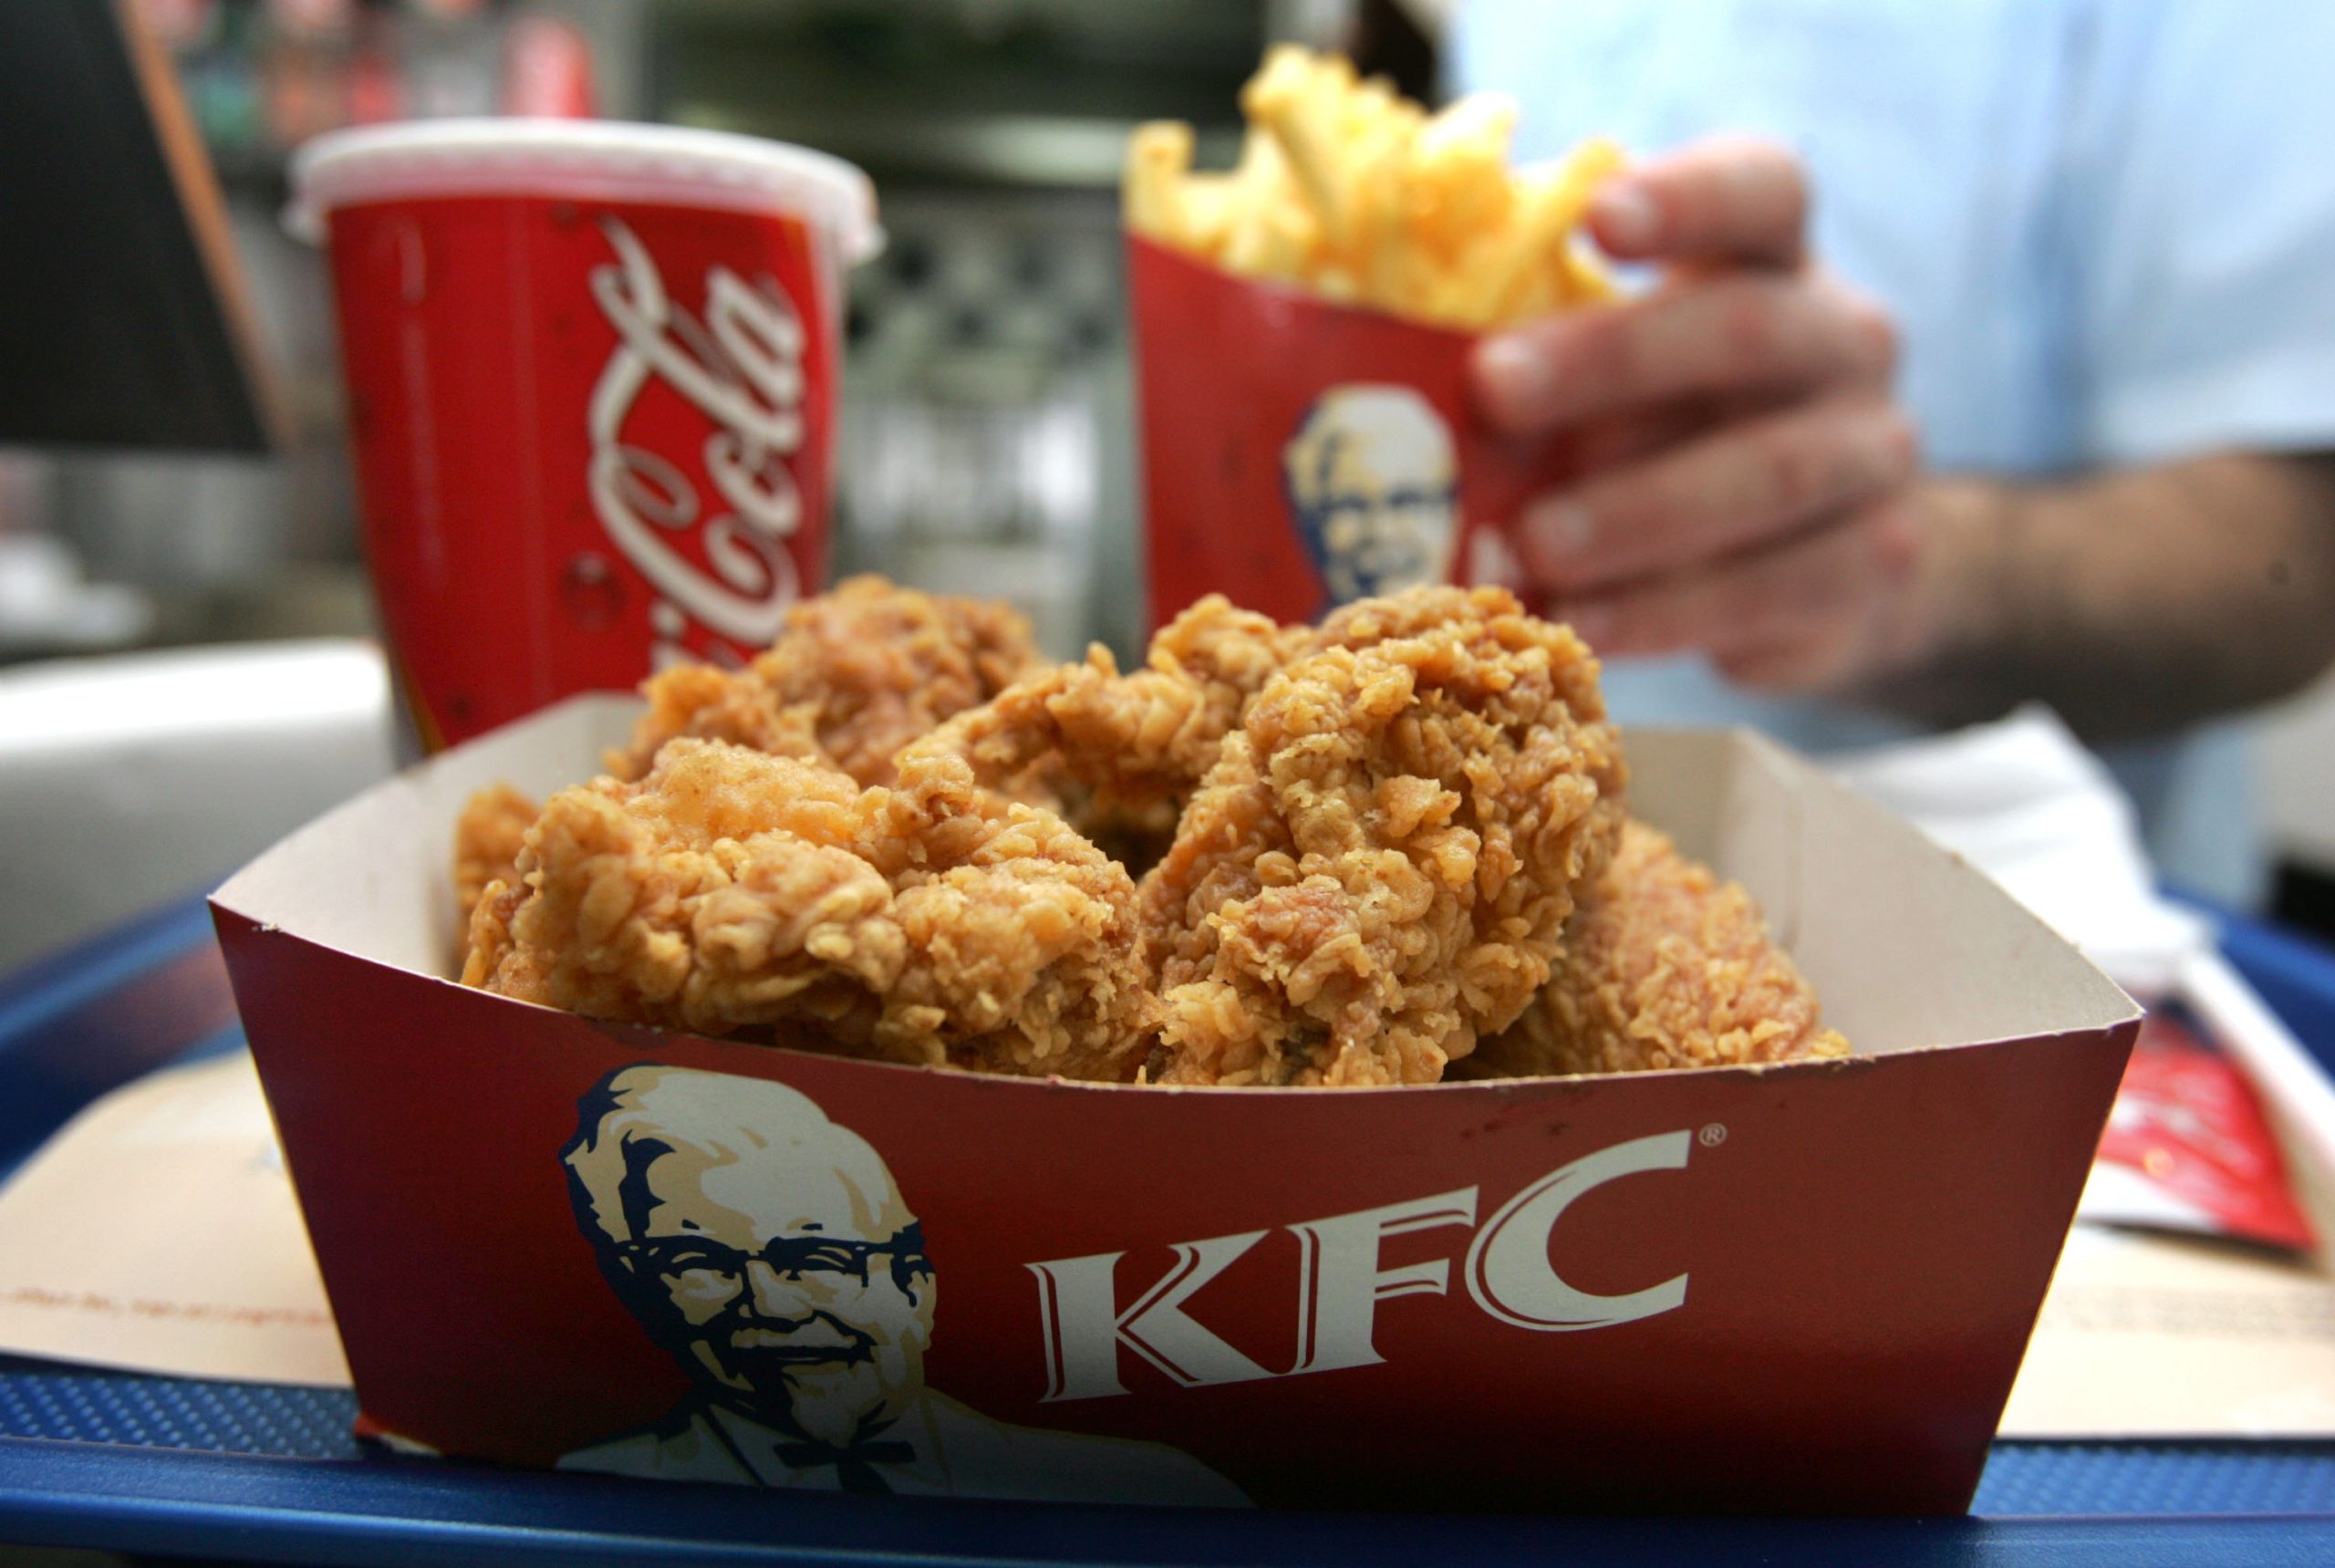 Revelan por accidente la receta secreta del pollo KFC